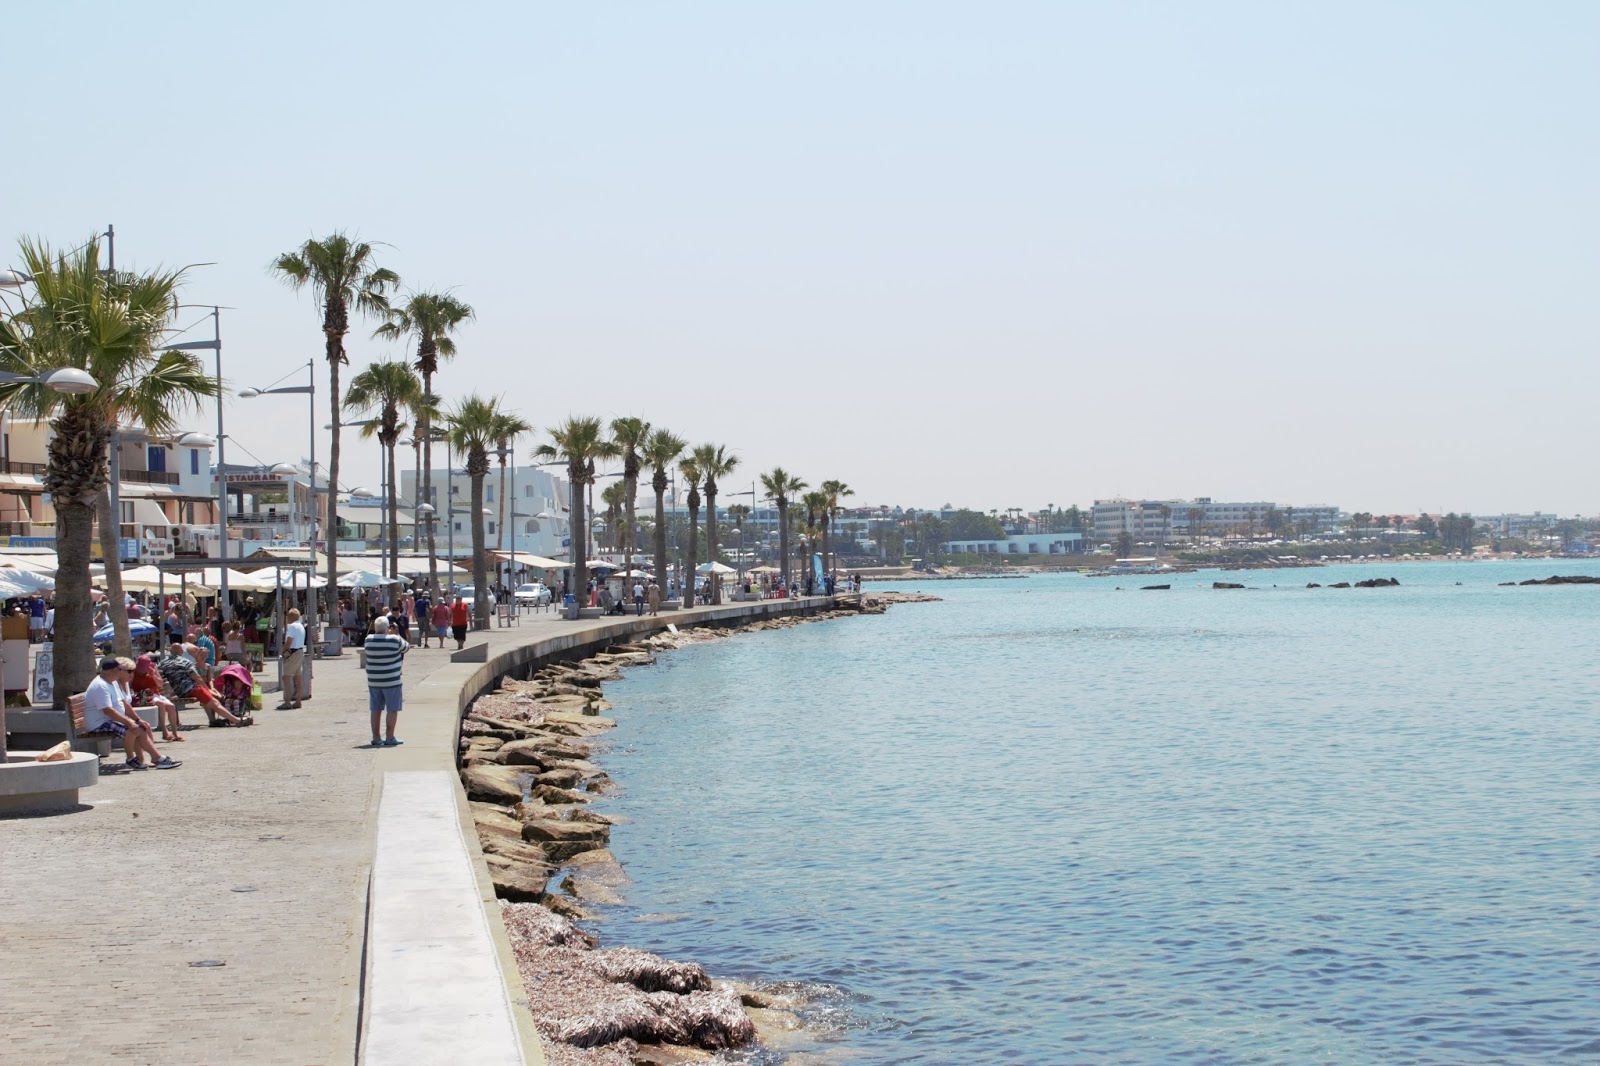 Paphos, Cyprus